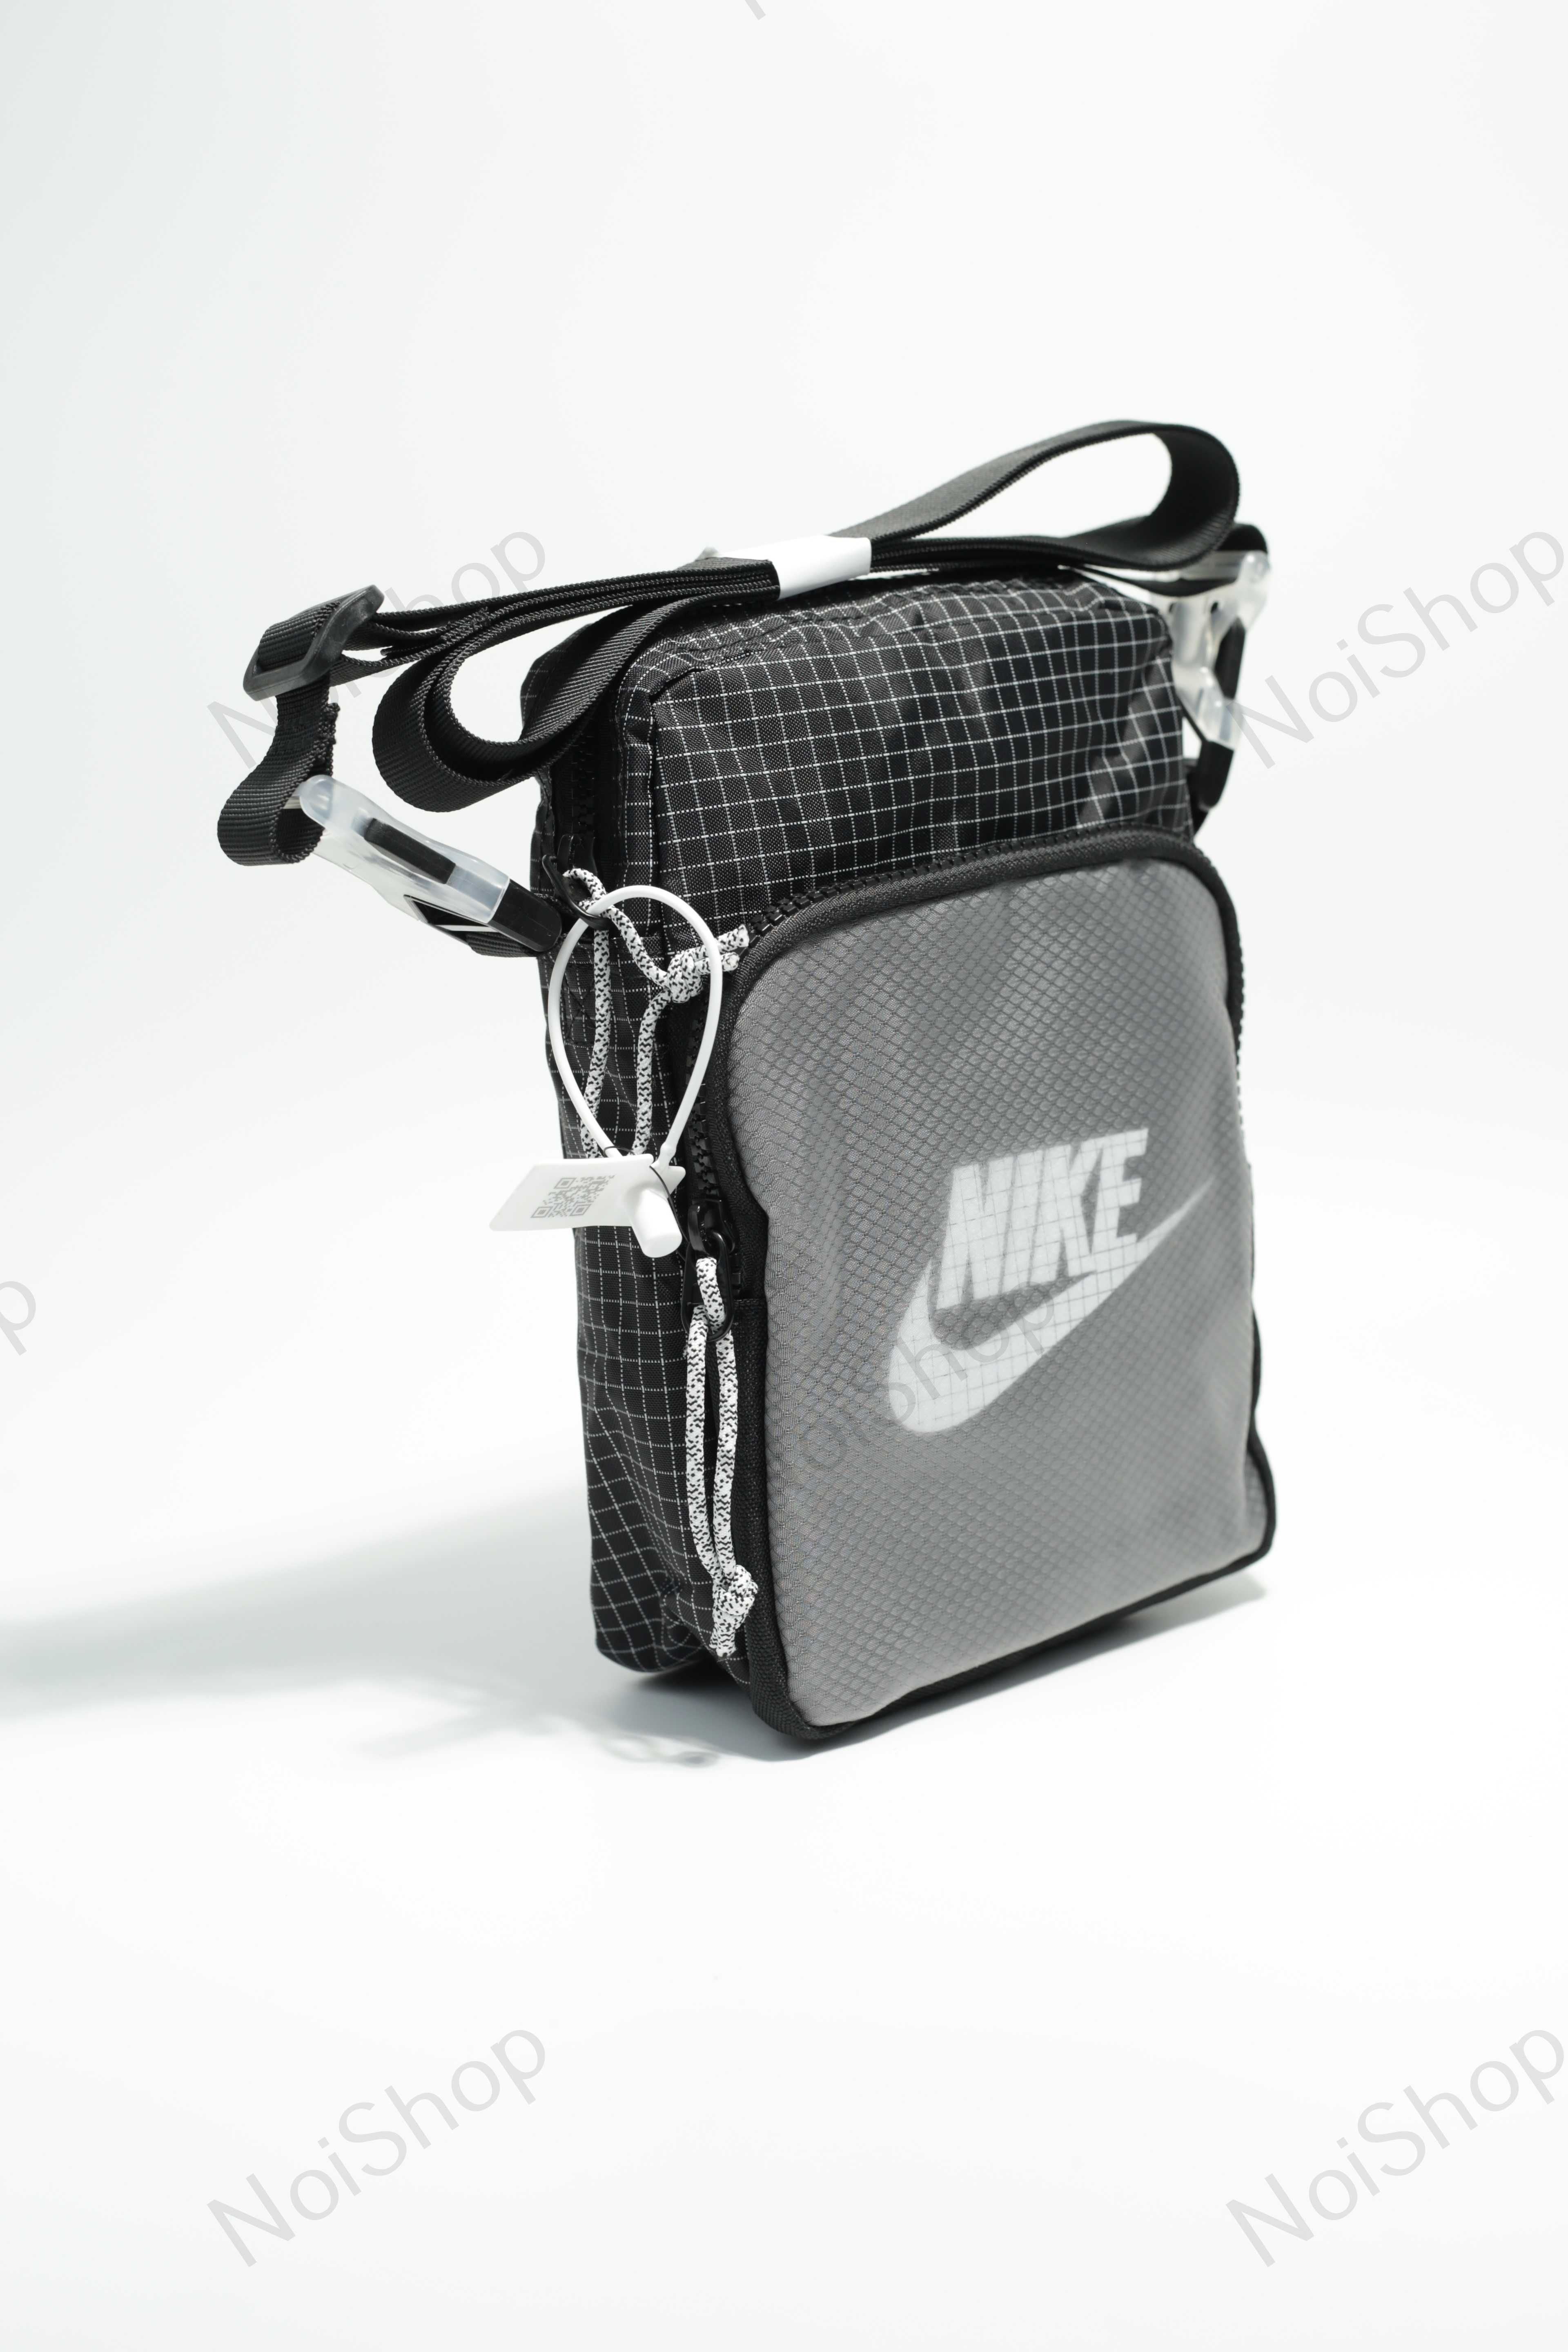 Барсетка Nike 2 кольори, месенджер найк, сумка чоловіча, сумка жіноча